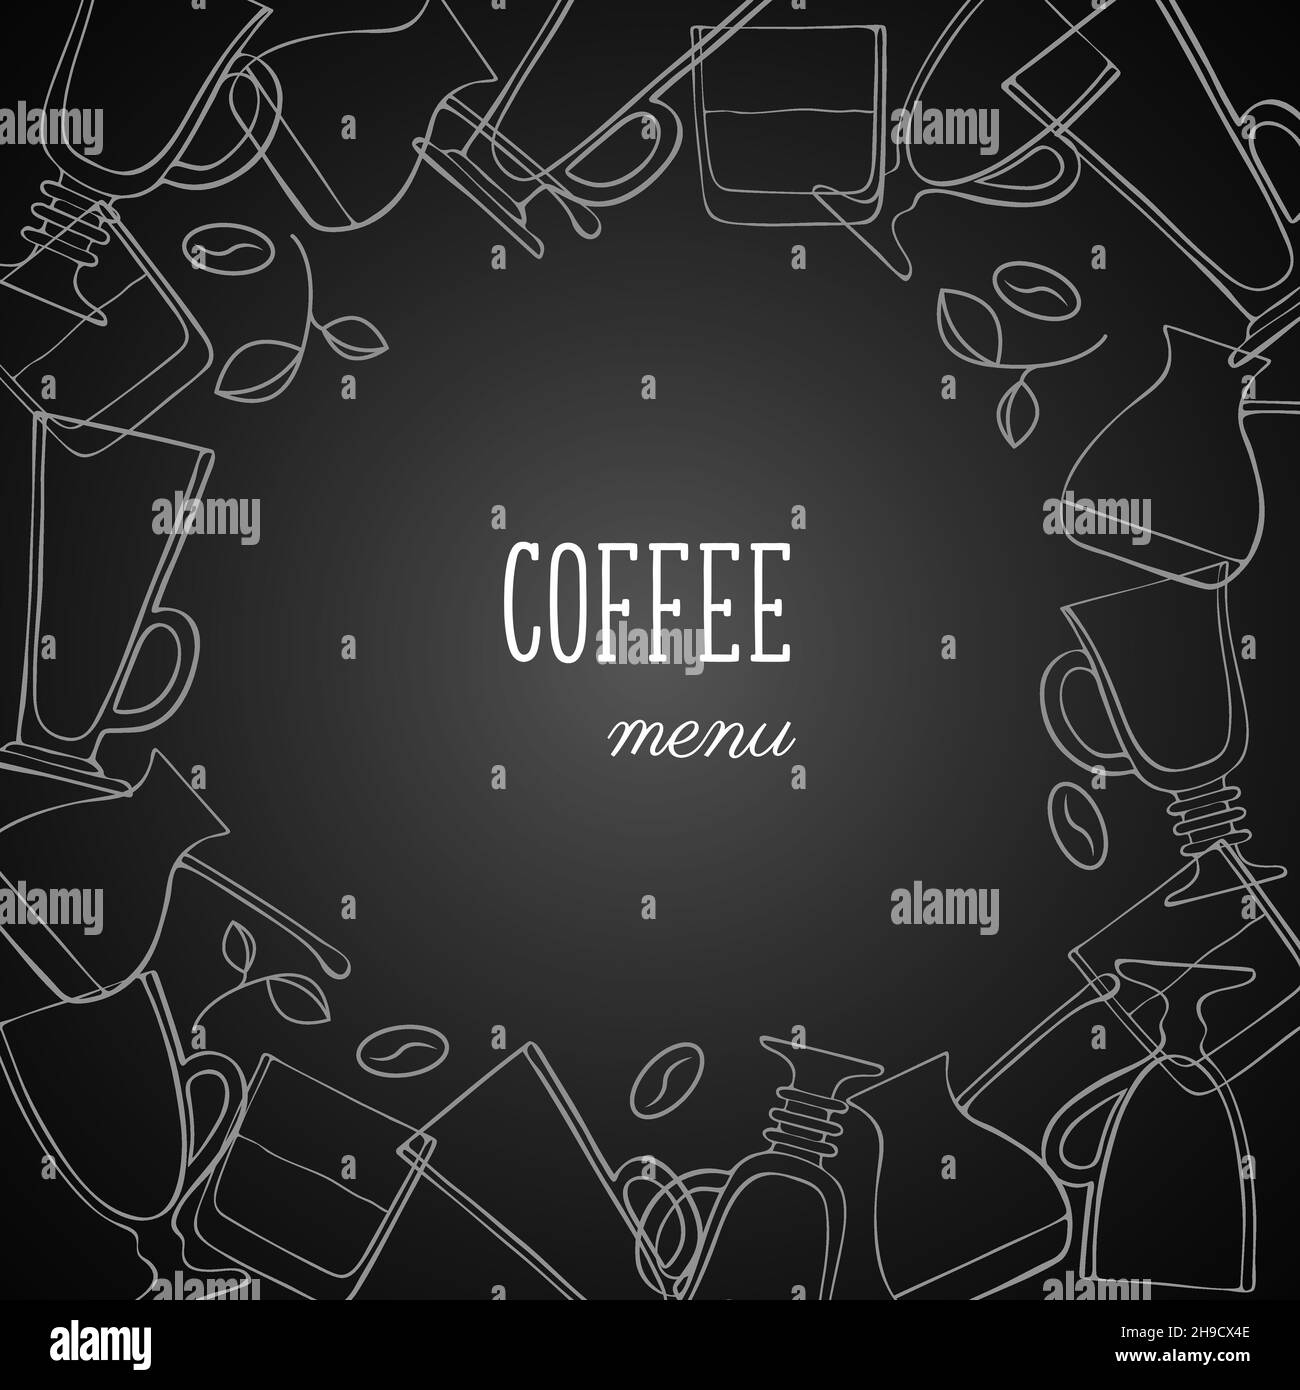 Menù del caffè bordo, banner, tazze tazze cappuccino bicchieri whiskey caffè macchina macinacaffè caffè fagioli, gesso bianco contorno doodle disegni. Illustrazione vettoriale Illustrazione Vettoriale